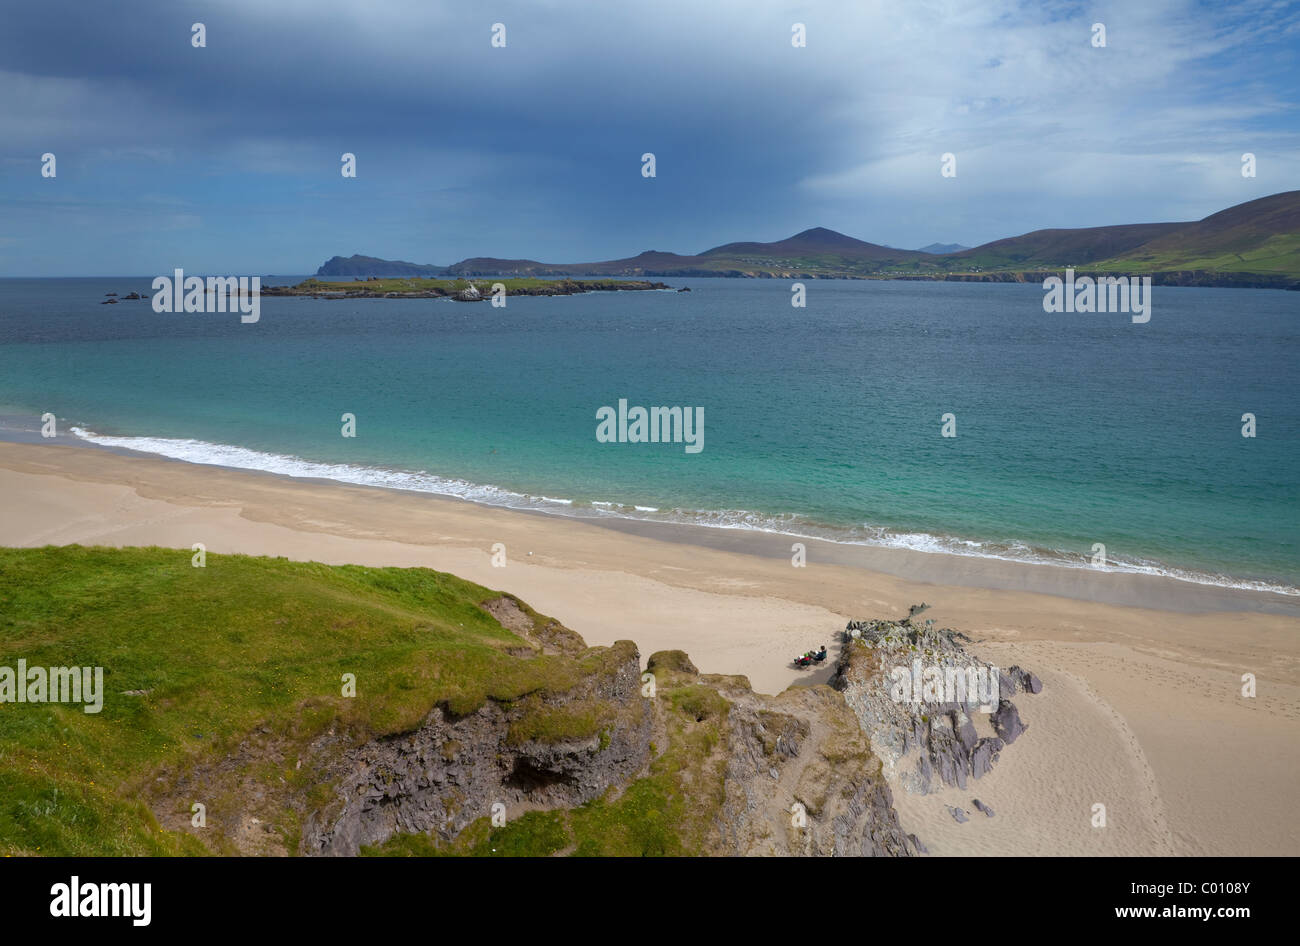 Plage vide sur une grande île Blasket, les îles Blasket, Slea Head Off sur la péninsule de Dingle, comté de Kerry, Irlande Banque D'Images